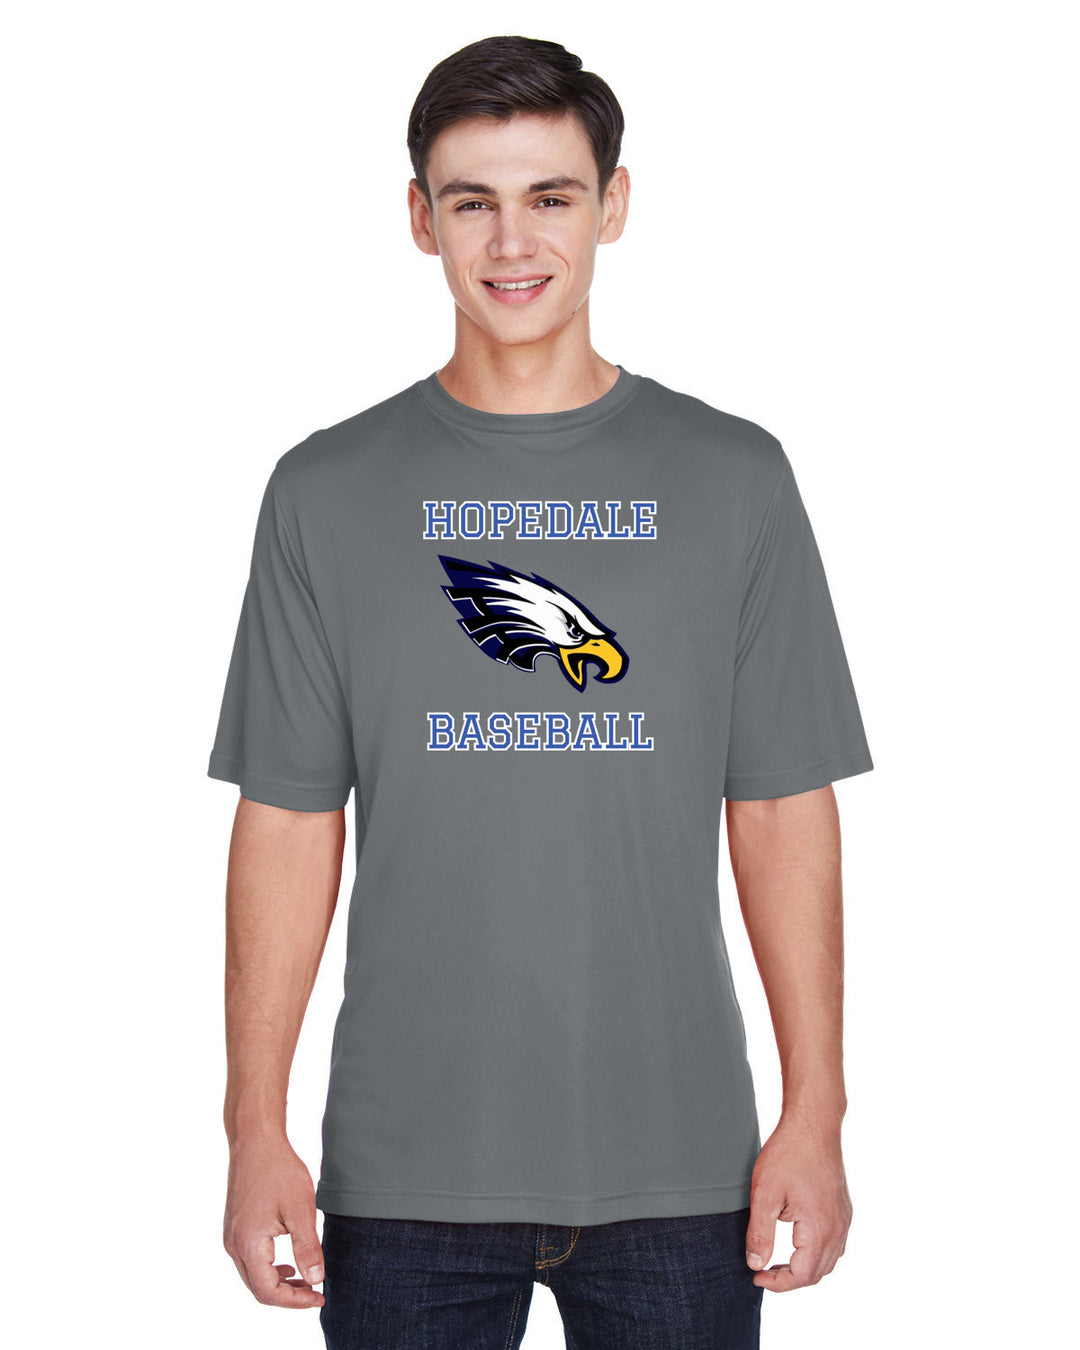 Hopedale Baseball - Men's Performance T-Shirt (TT11)